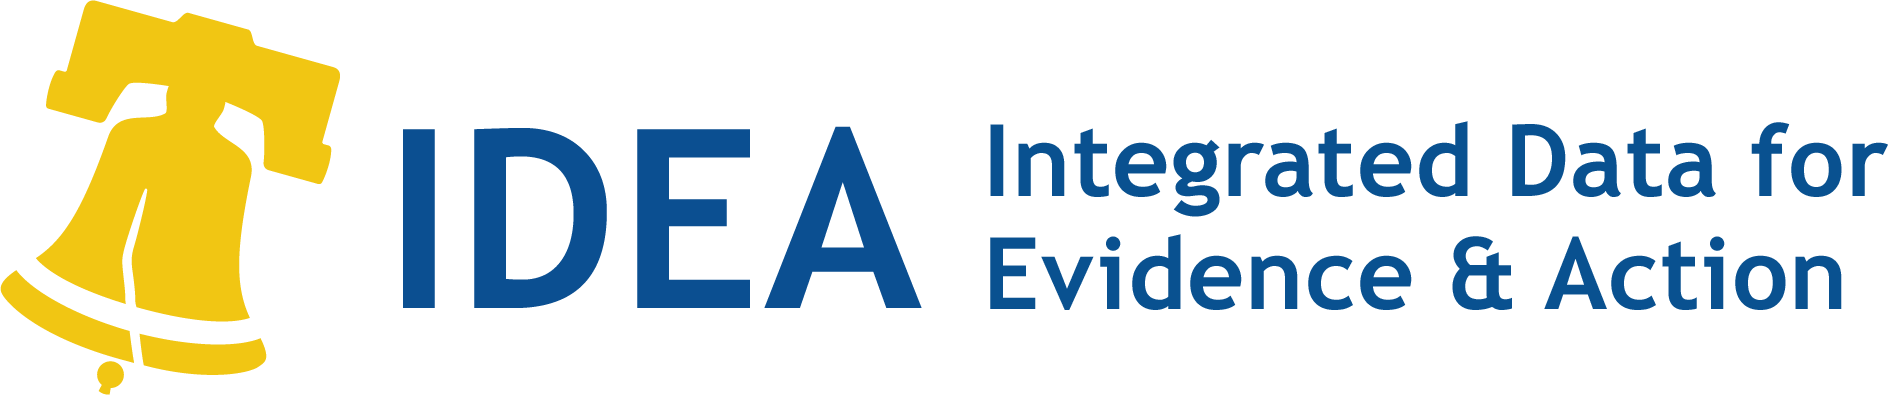 Логотип Управления интегрированных данных для целей доказывания и принятия мер